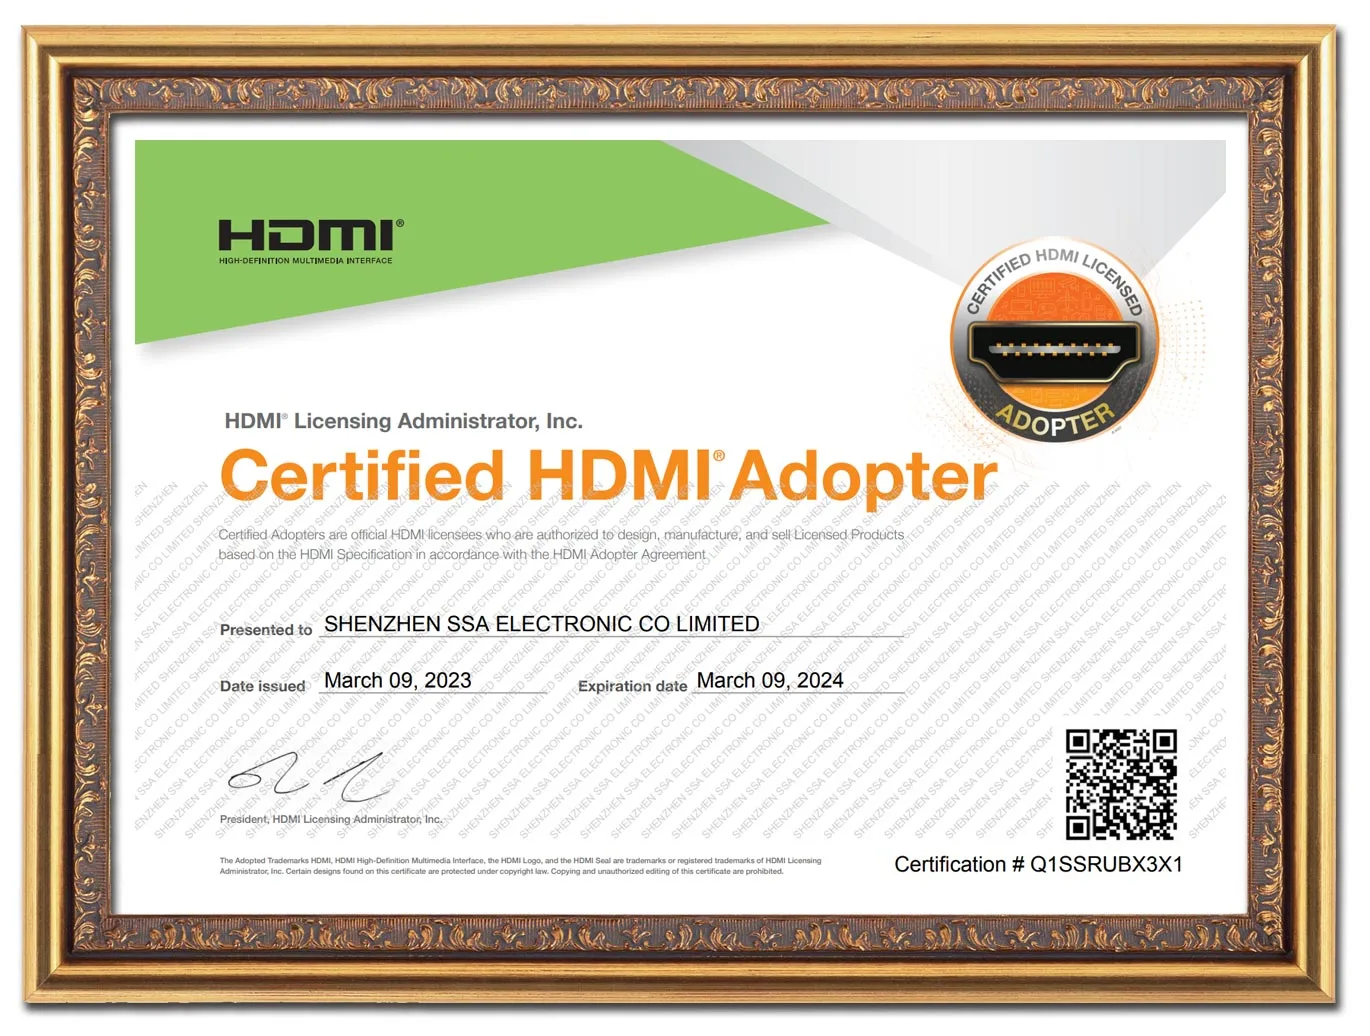 2023 HDMI Certificate Renewal